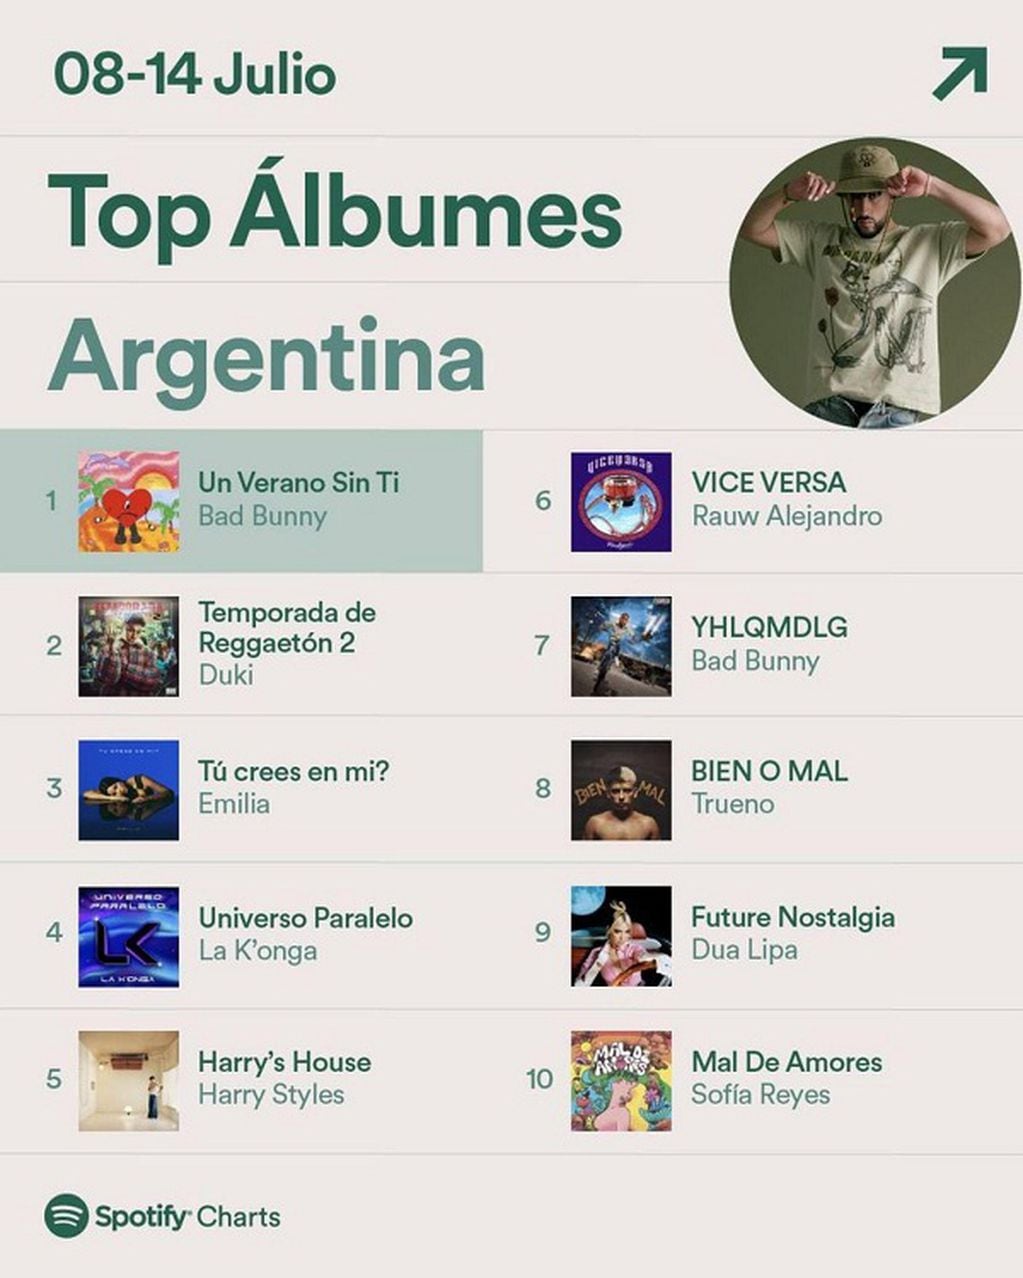 Emilia Mernes es de las más escuchadas de Argentina con su álbum "Tu crees en mí?".